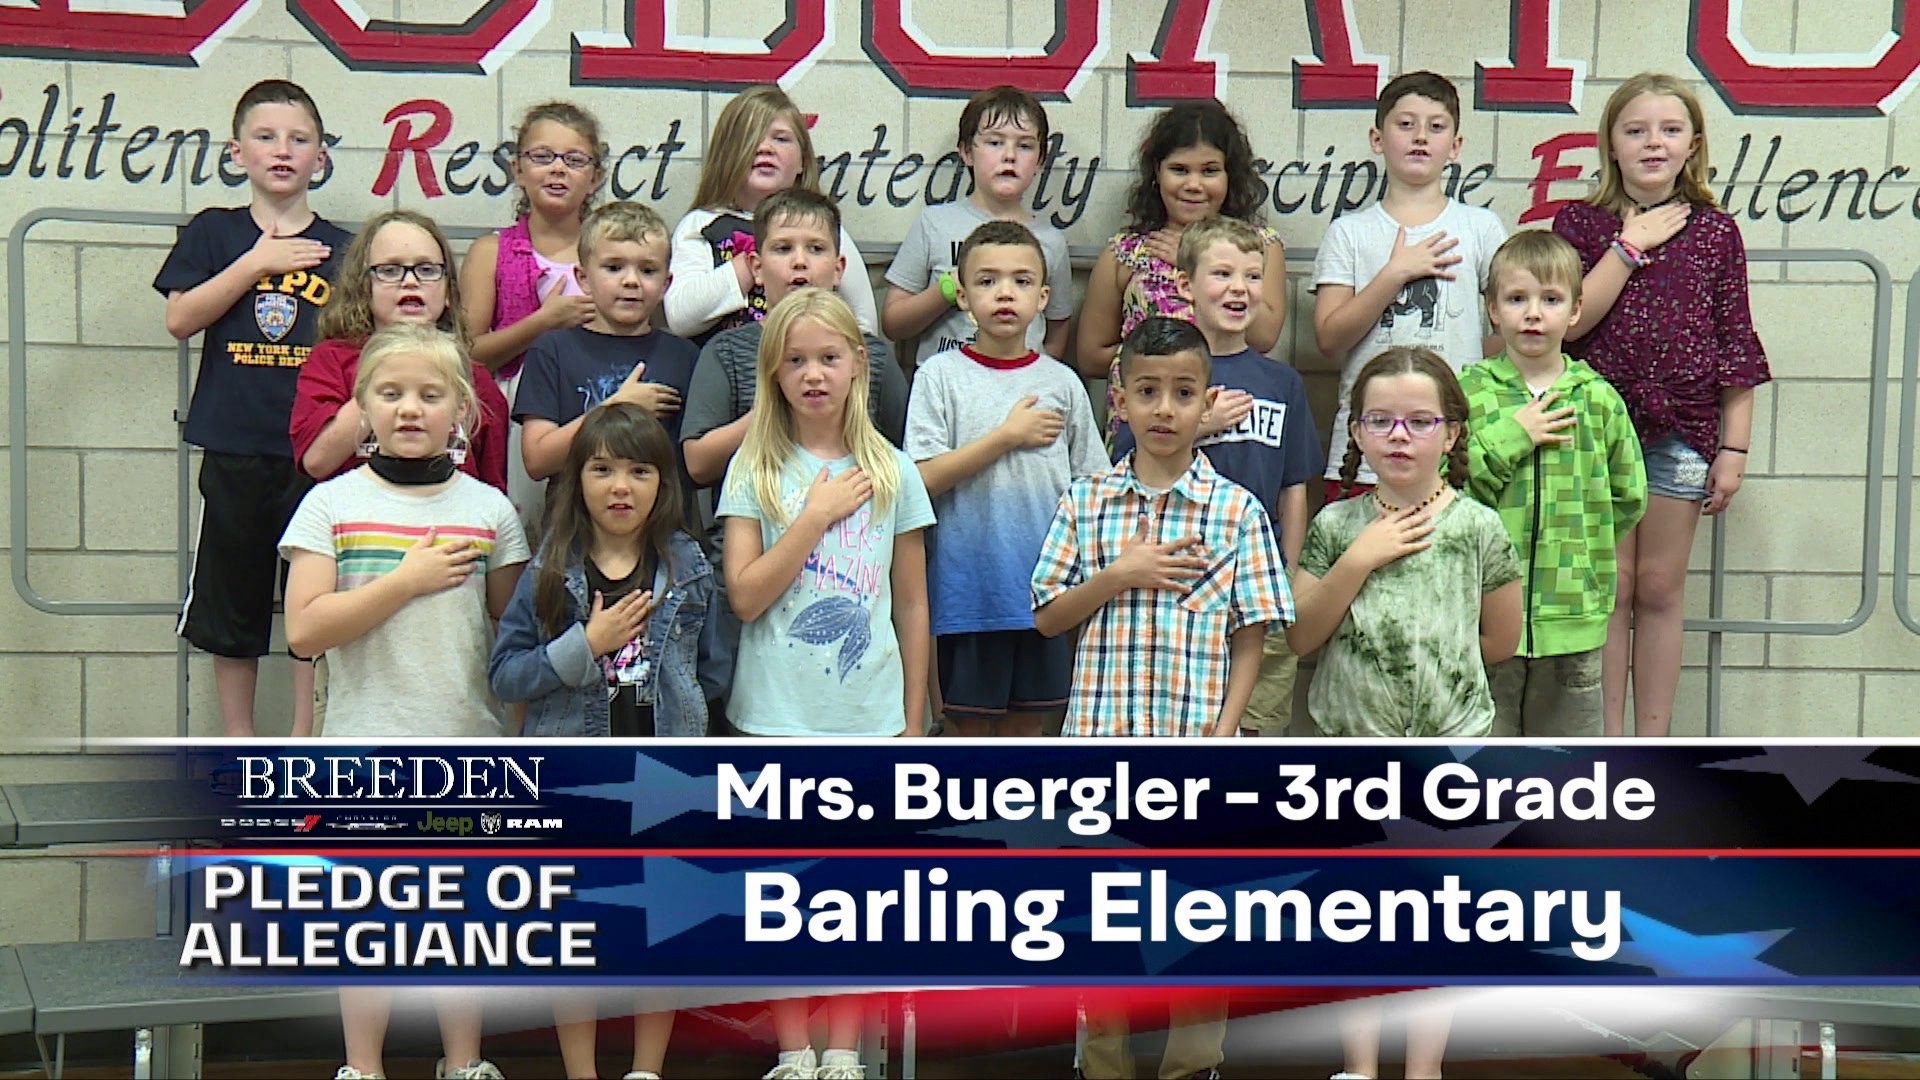 Mrs. Burgler 3rd Grade Barling Elementary